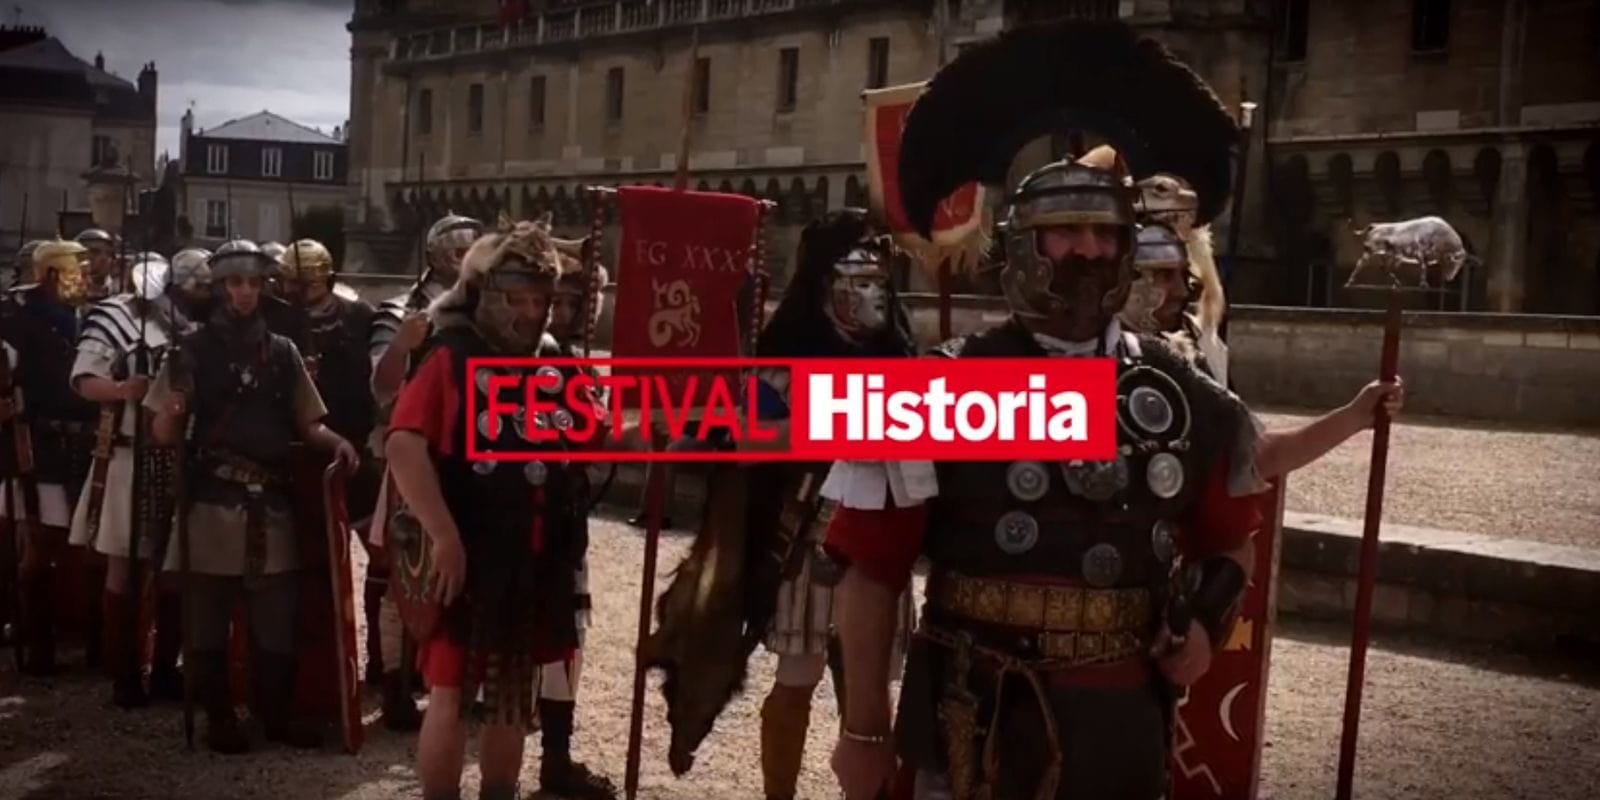 Le festival Historia, trois jours pour vivre une Histoire en fête